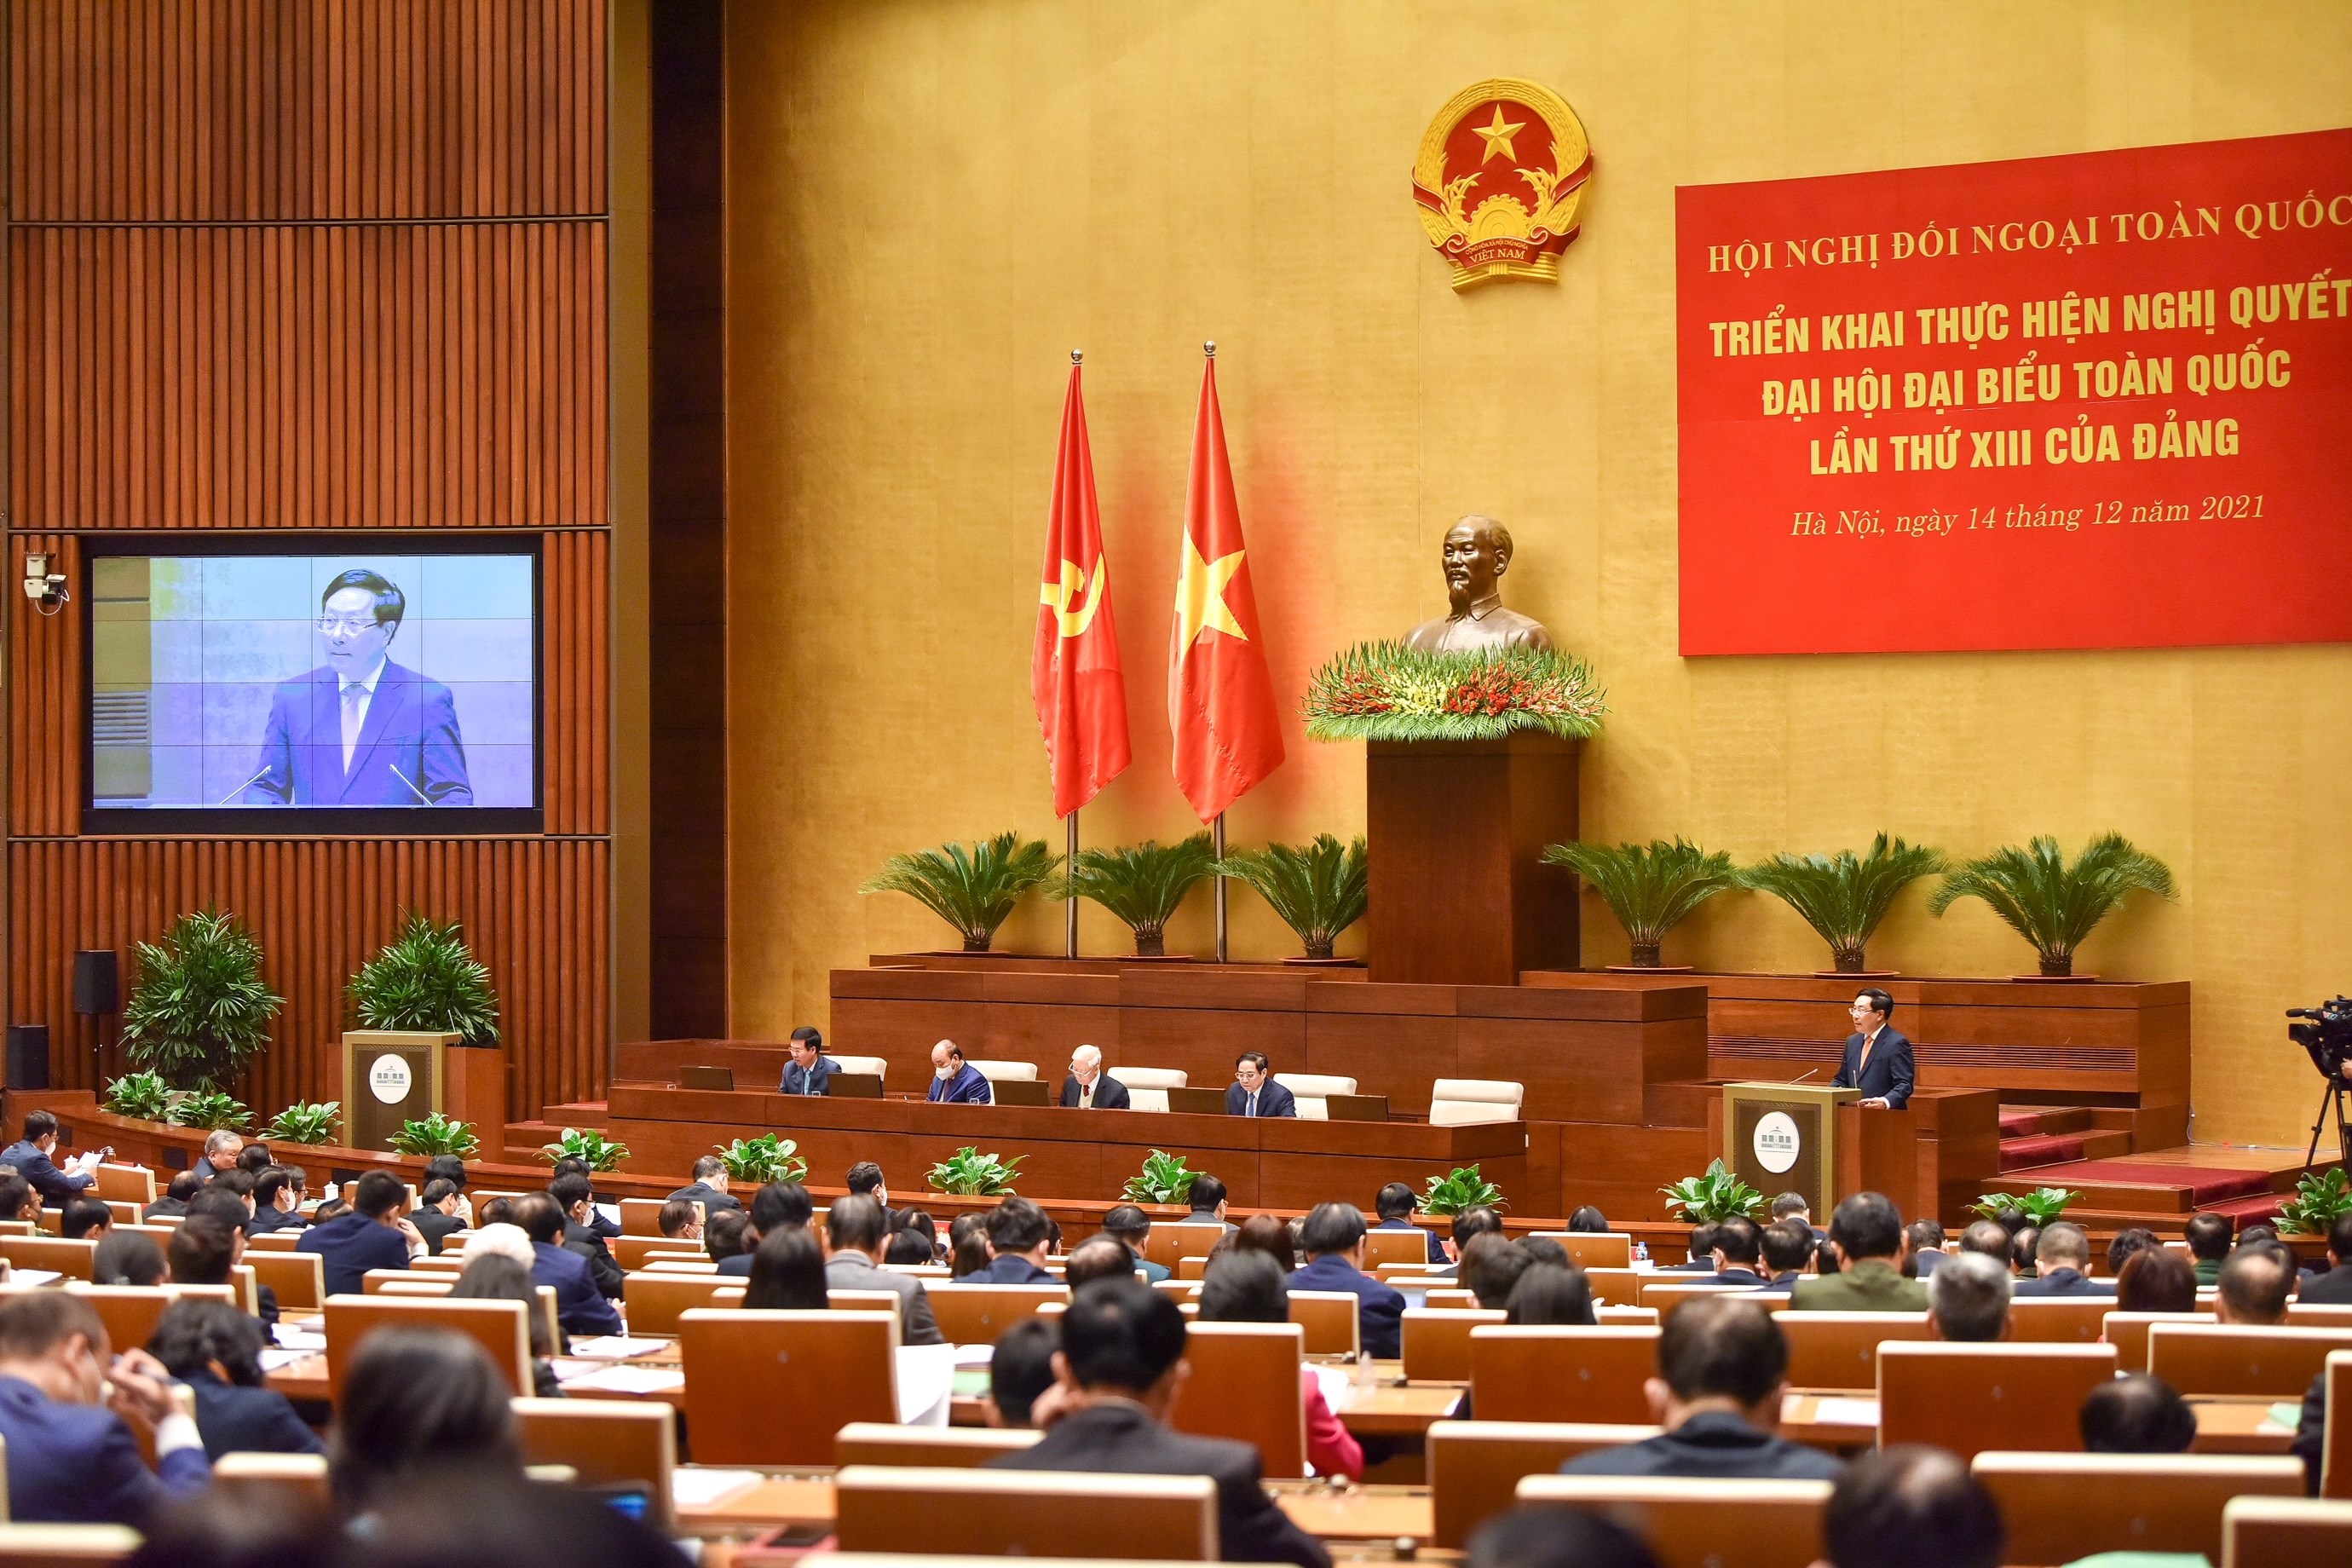 Bảo đảm lợi ích quốc gia - dân tộc trong đường lối đối ngoại thời kỳ đổi mới của Việt Nam